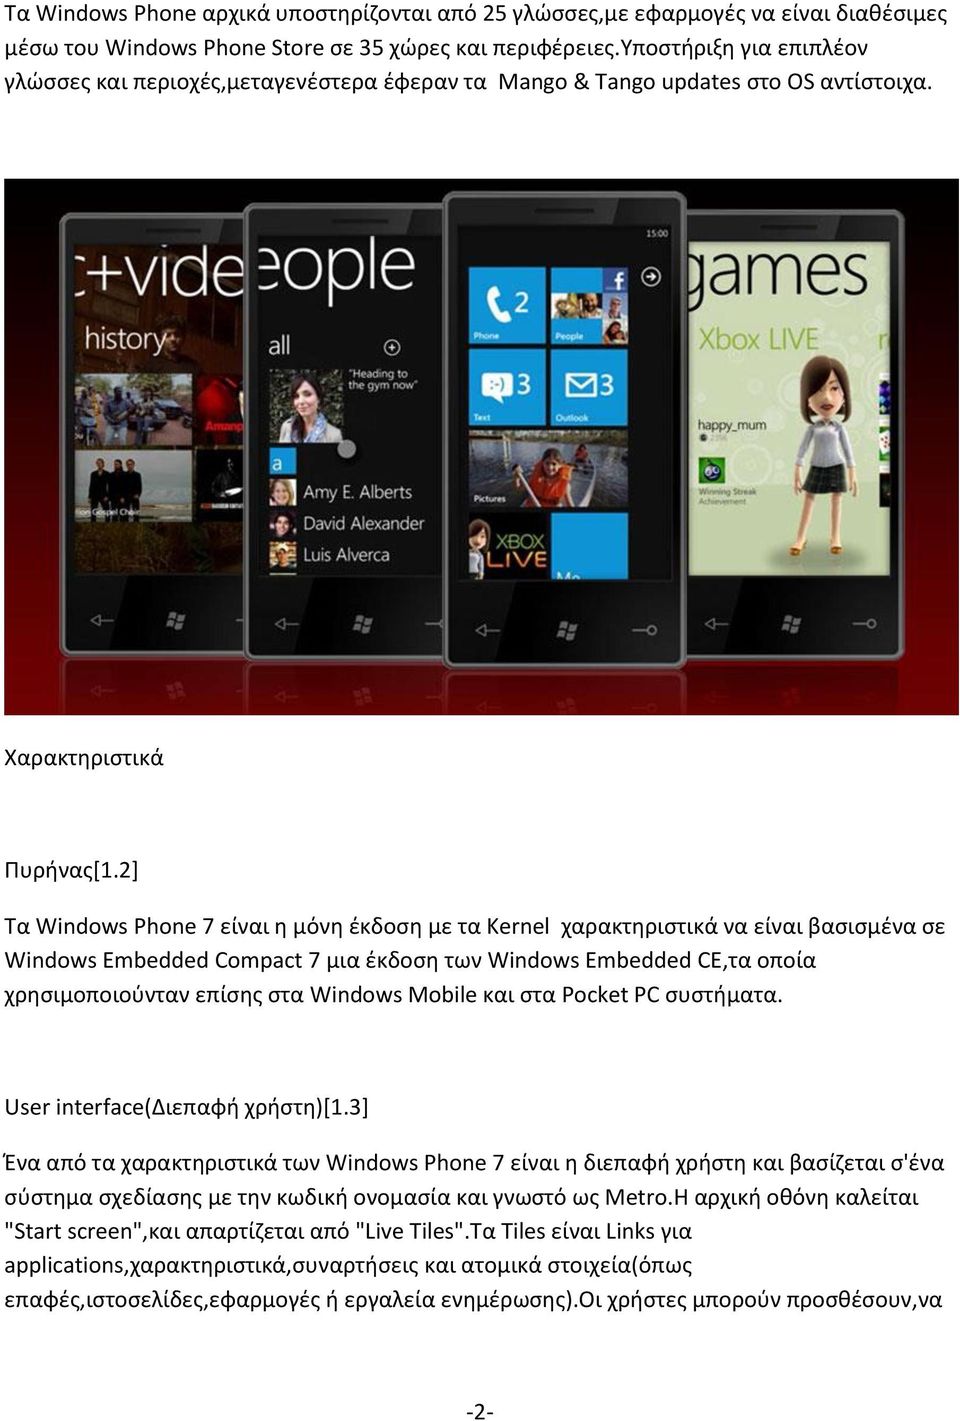 2] Τα Windows Phone 7 είναι η μόνη έκδοση με τα Kernel χαρακτηριστικά να είναι βασισμένα σε Windows Embedded Compact 7 μια έκδοση των Windows Embedded CE,τα οποία χρησιμοποιούνταν επίσης στα Windows